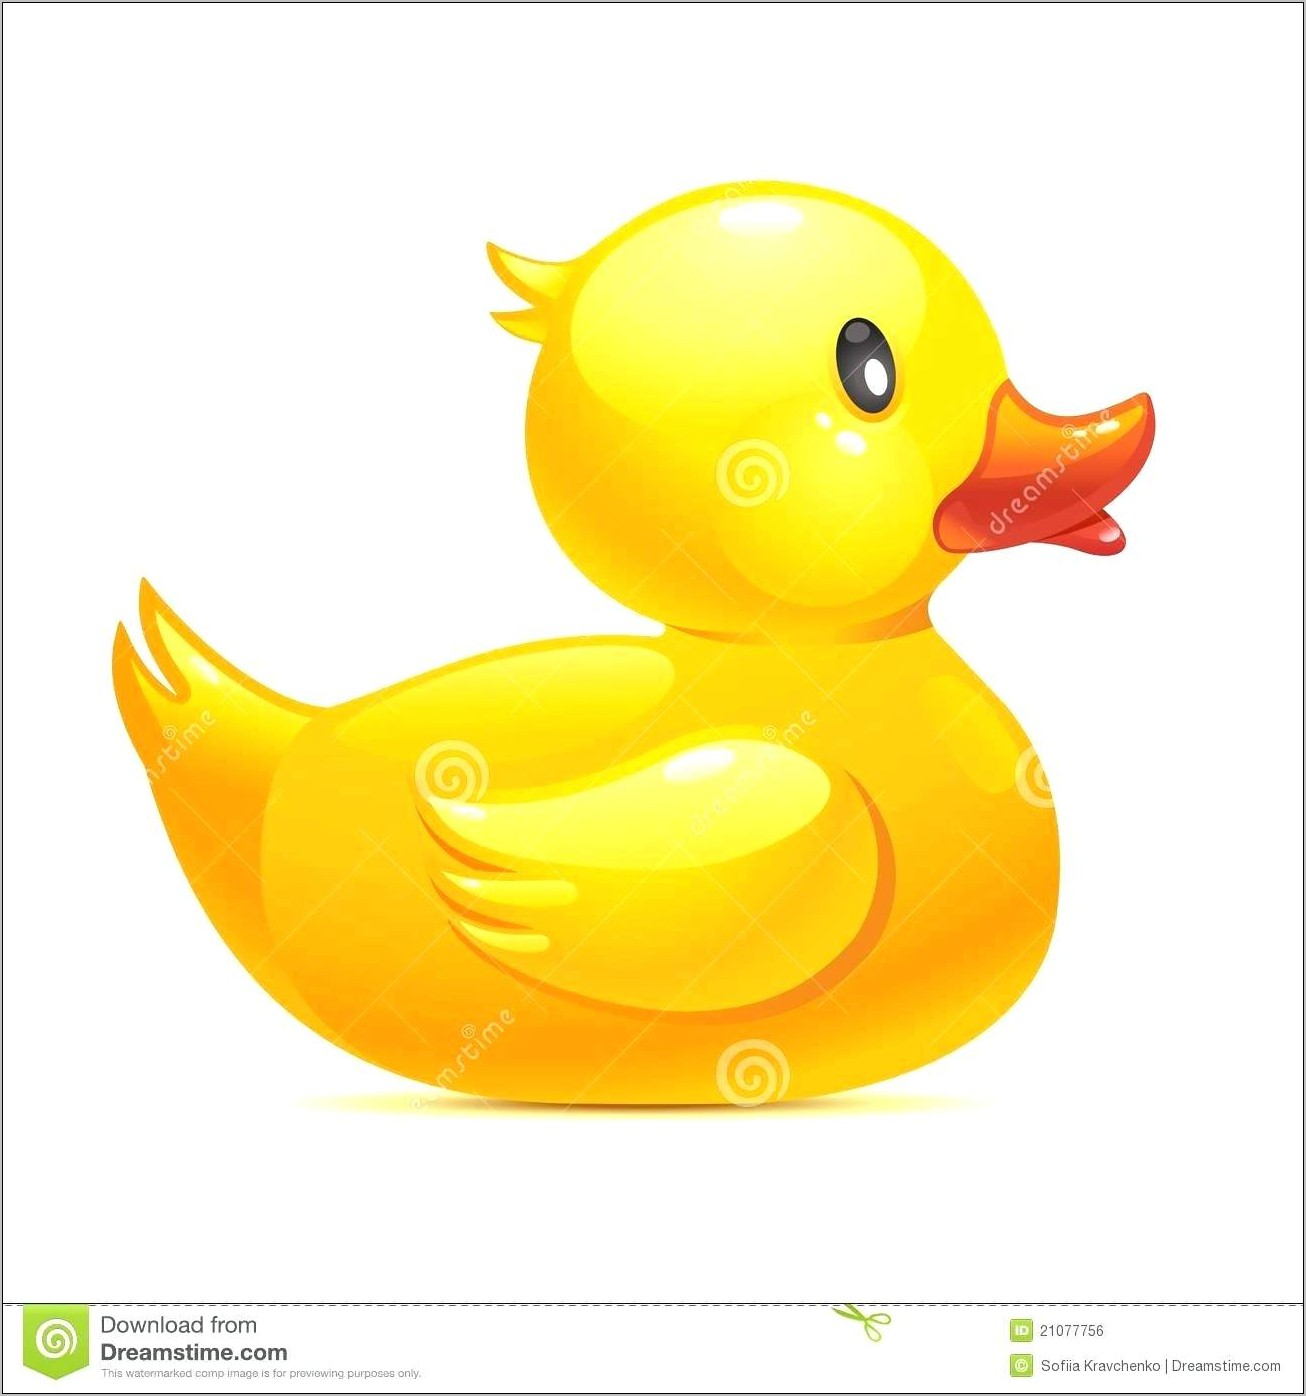 Rubber Duck Birthday Invitation Template